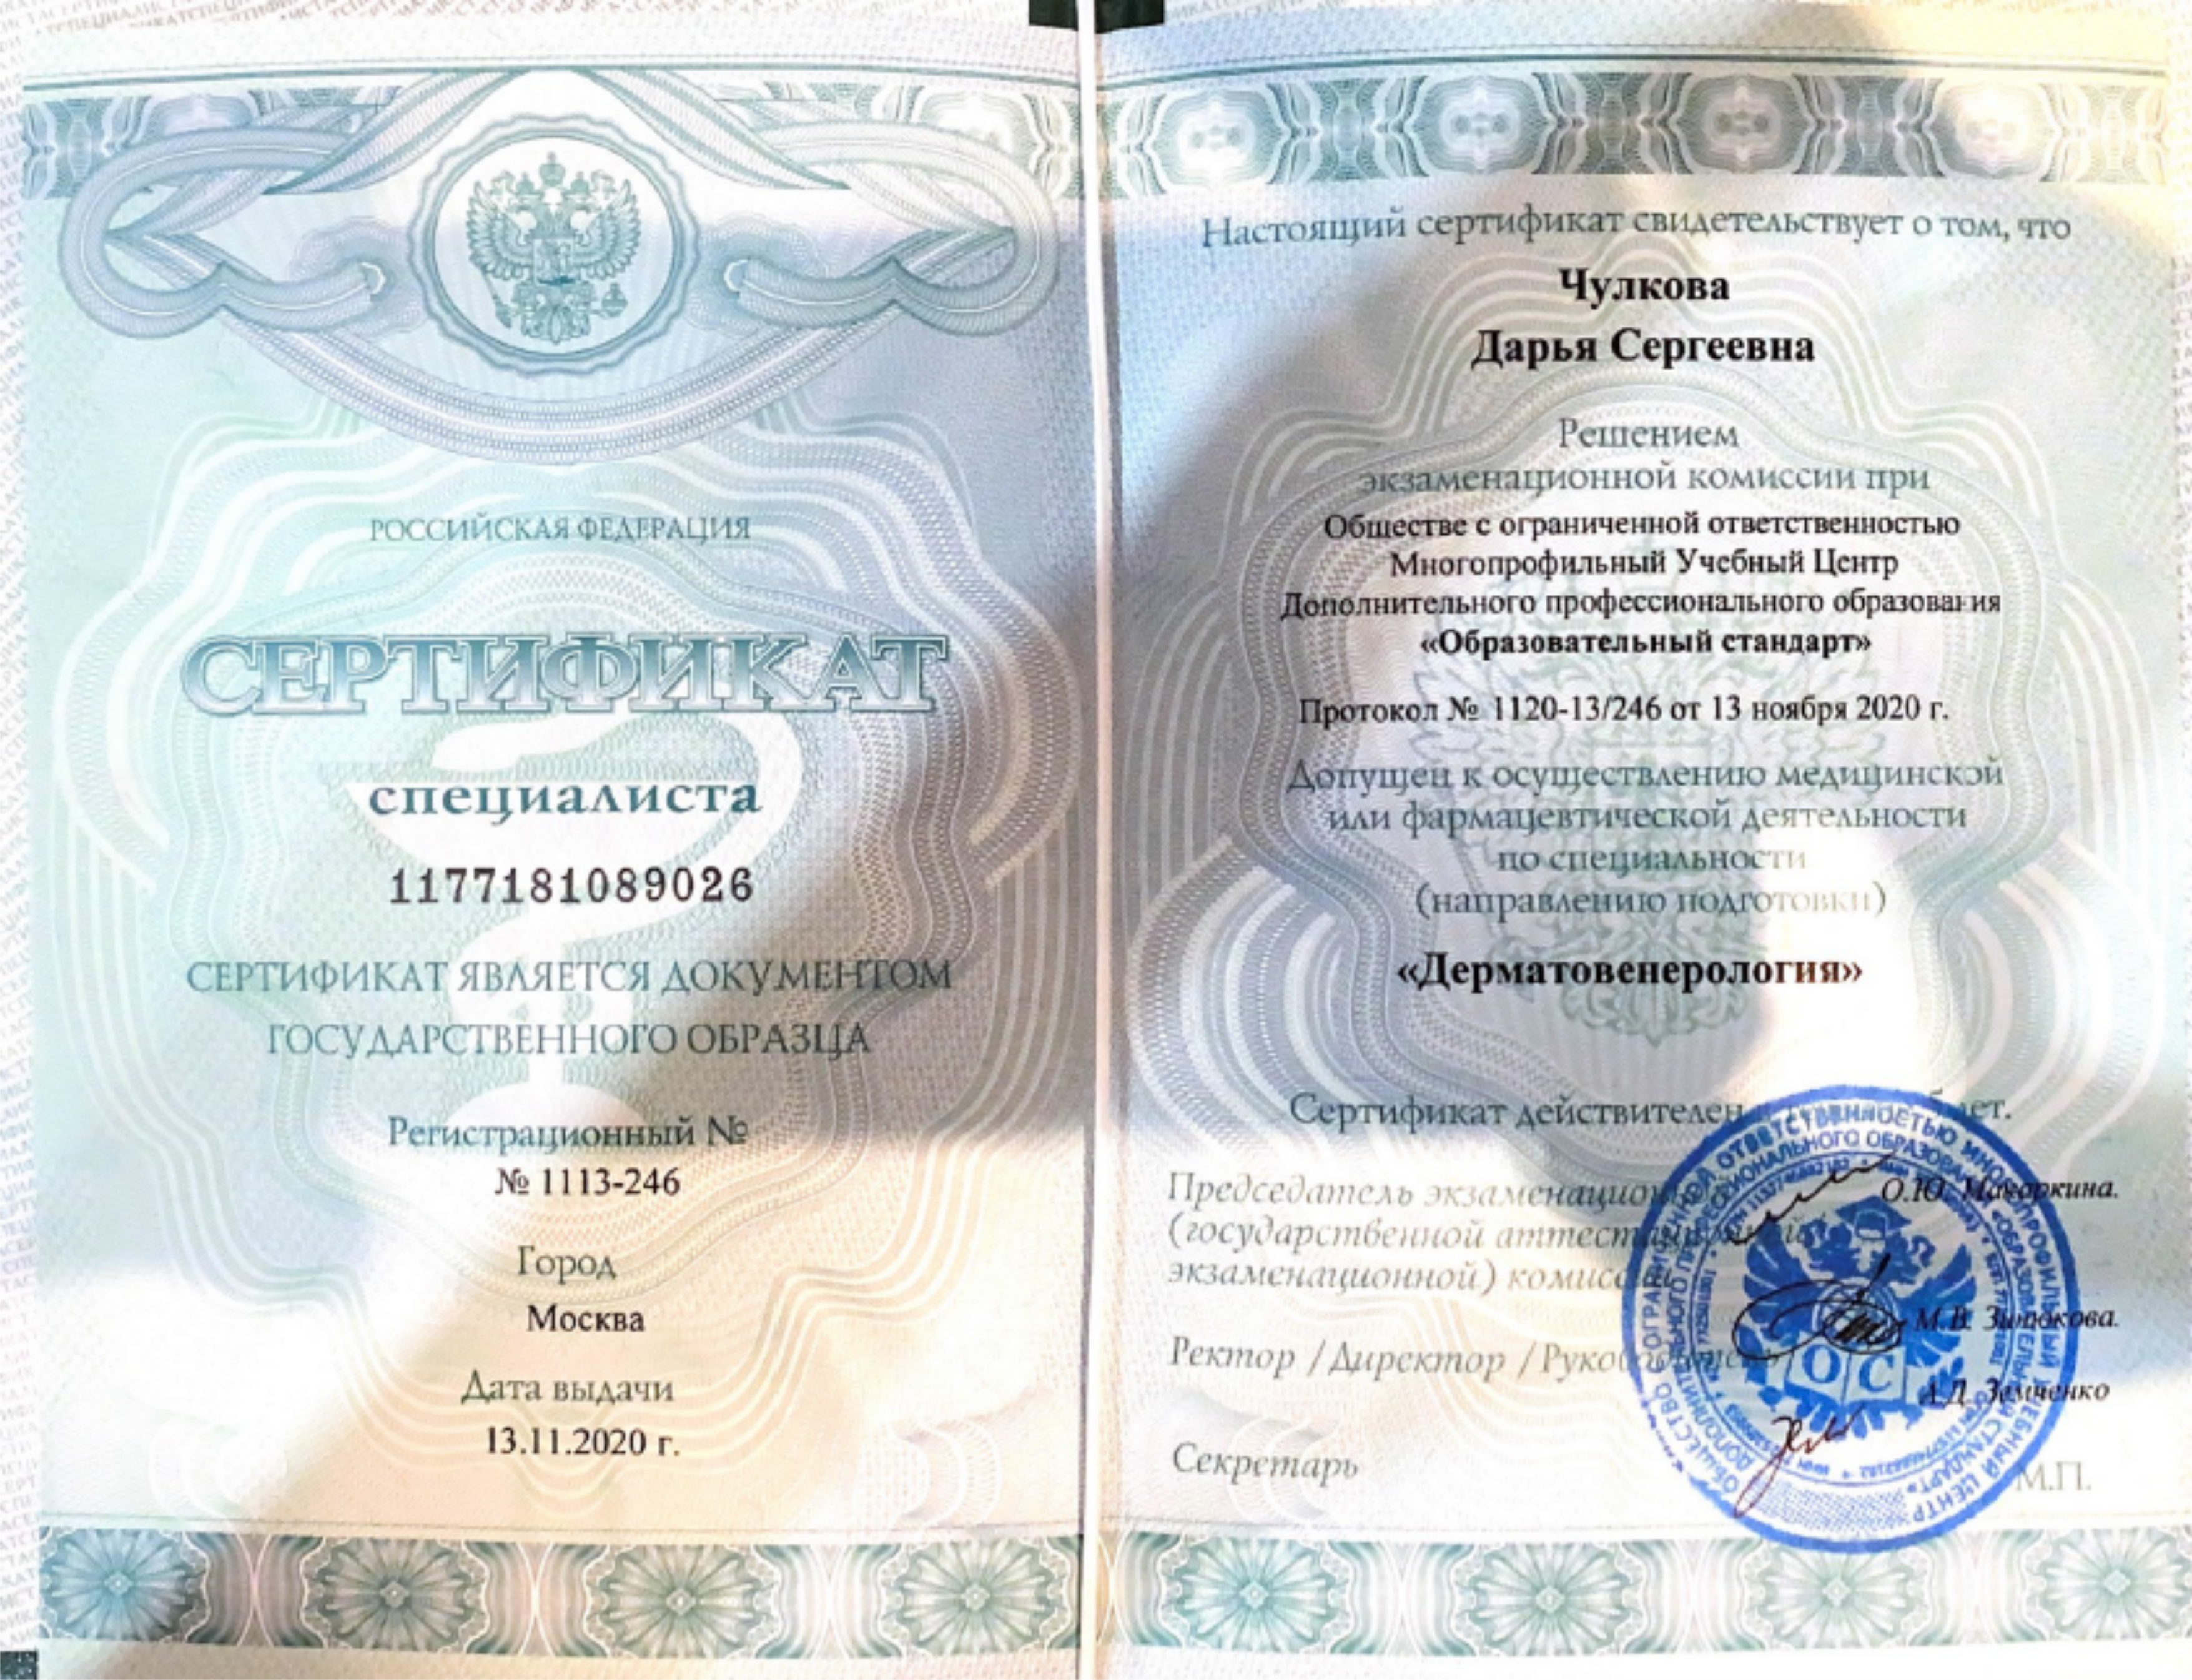 Сертификат специалиста "Дерматовенерология". 2020 г.